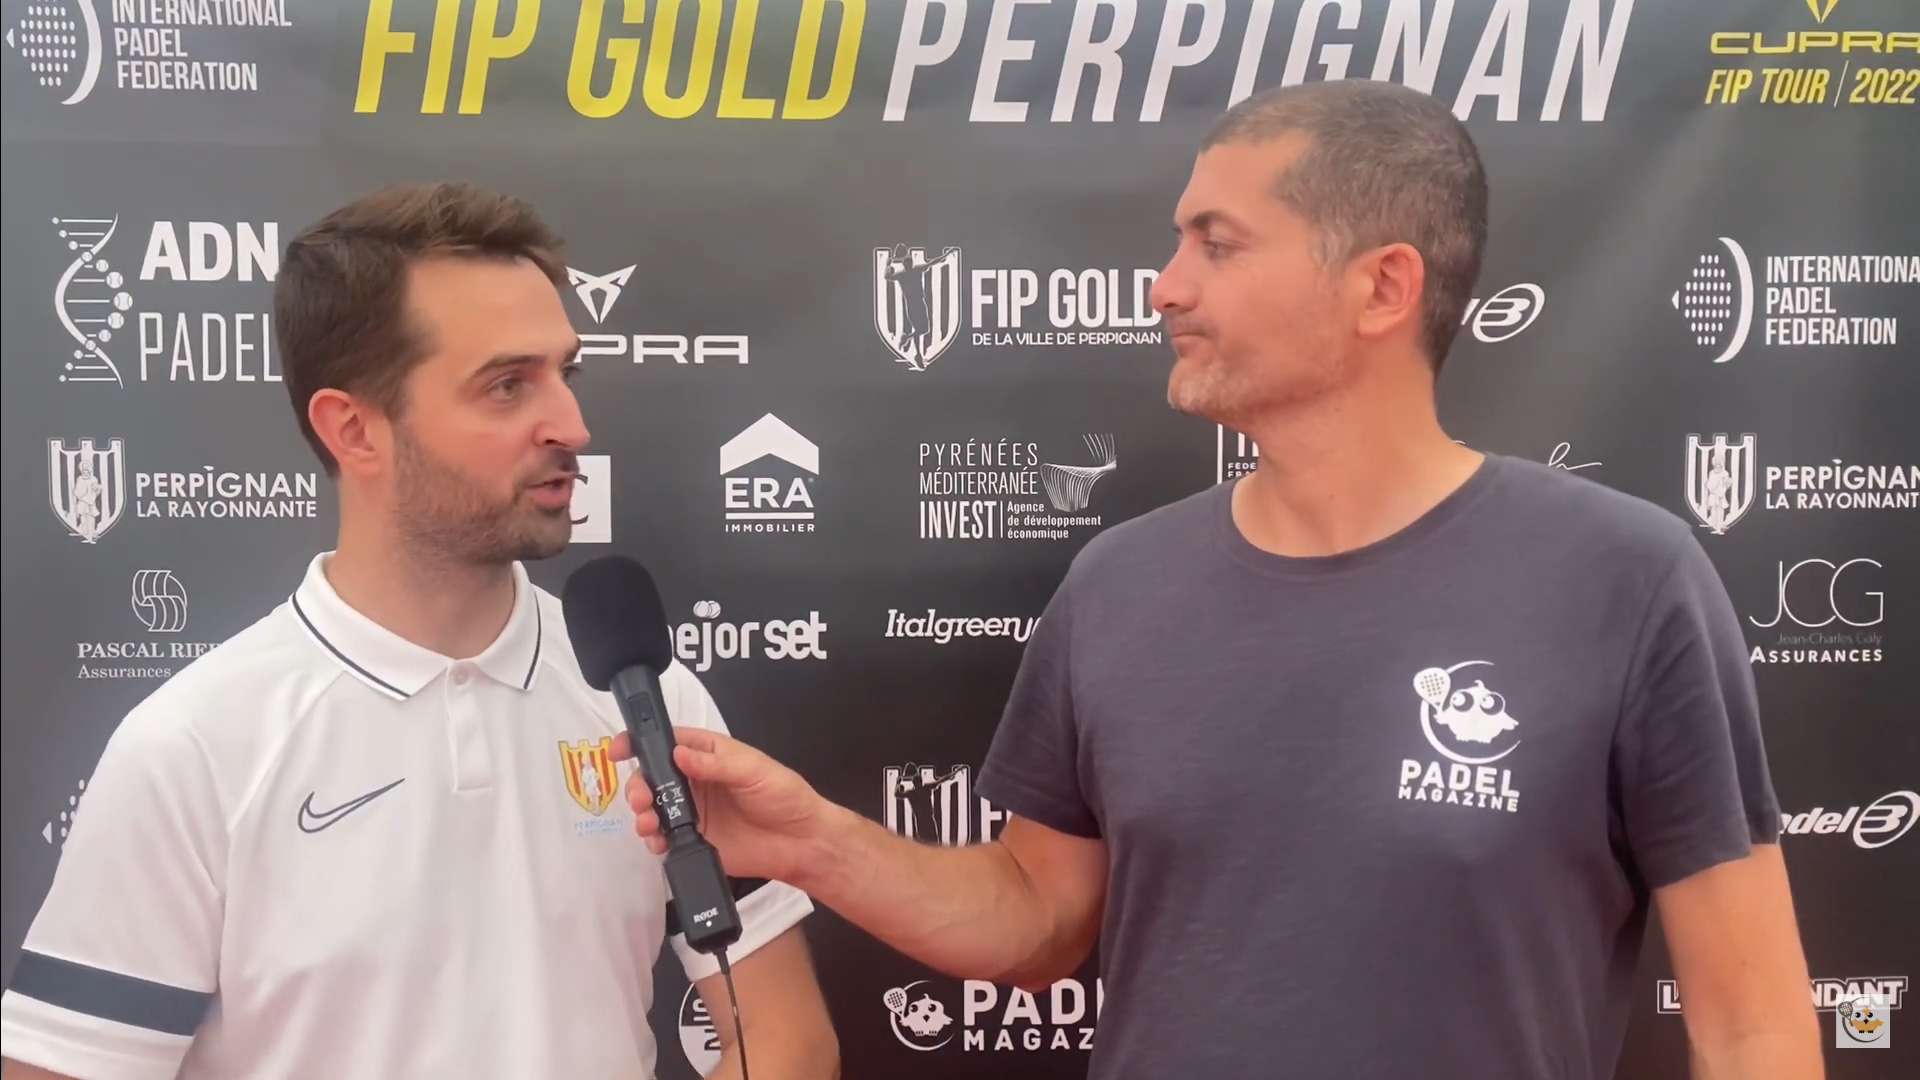 Sébastien Ménard: “Mantener el FIP Gold todos los años”